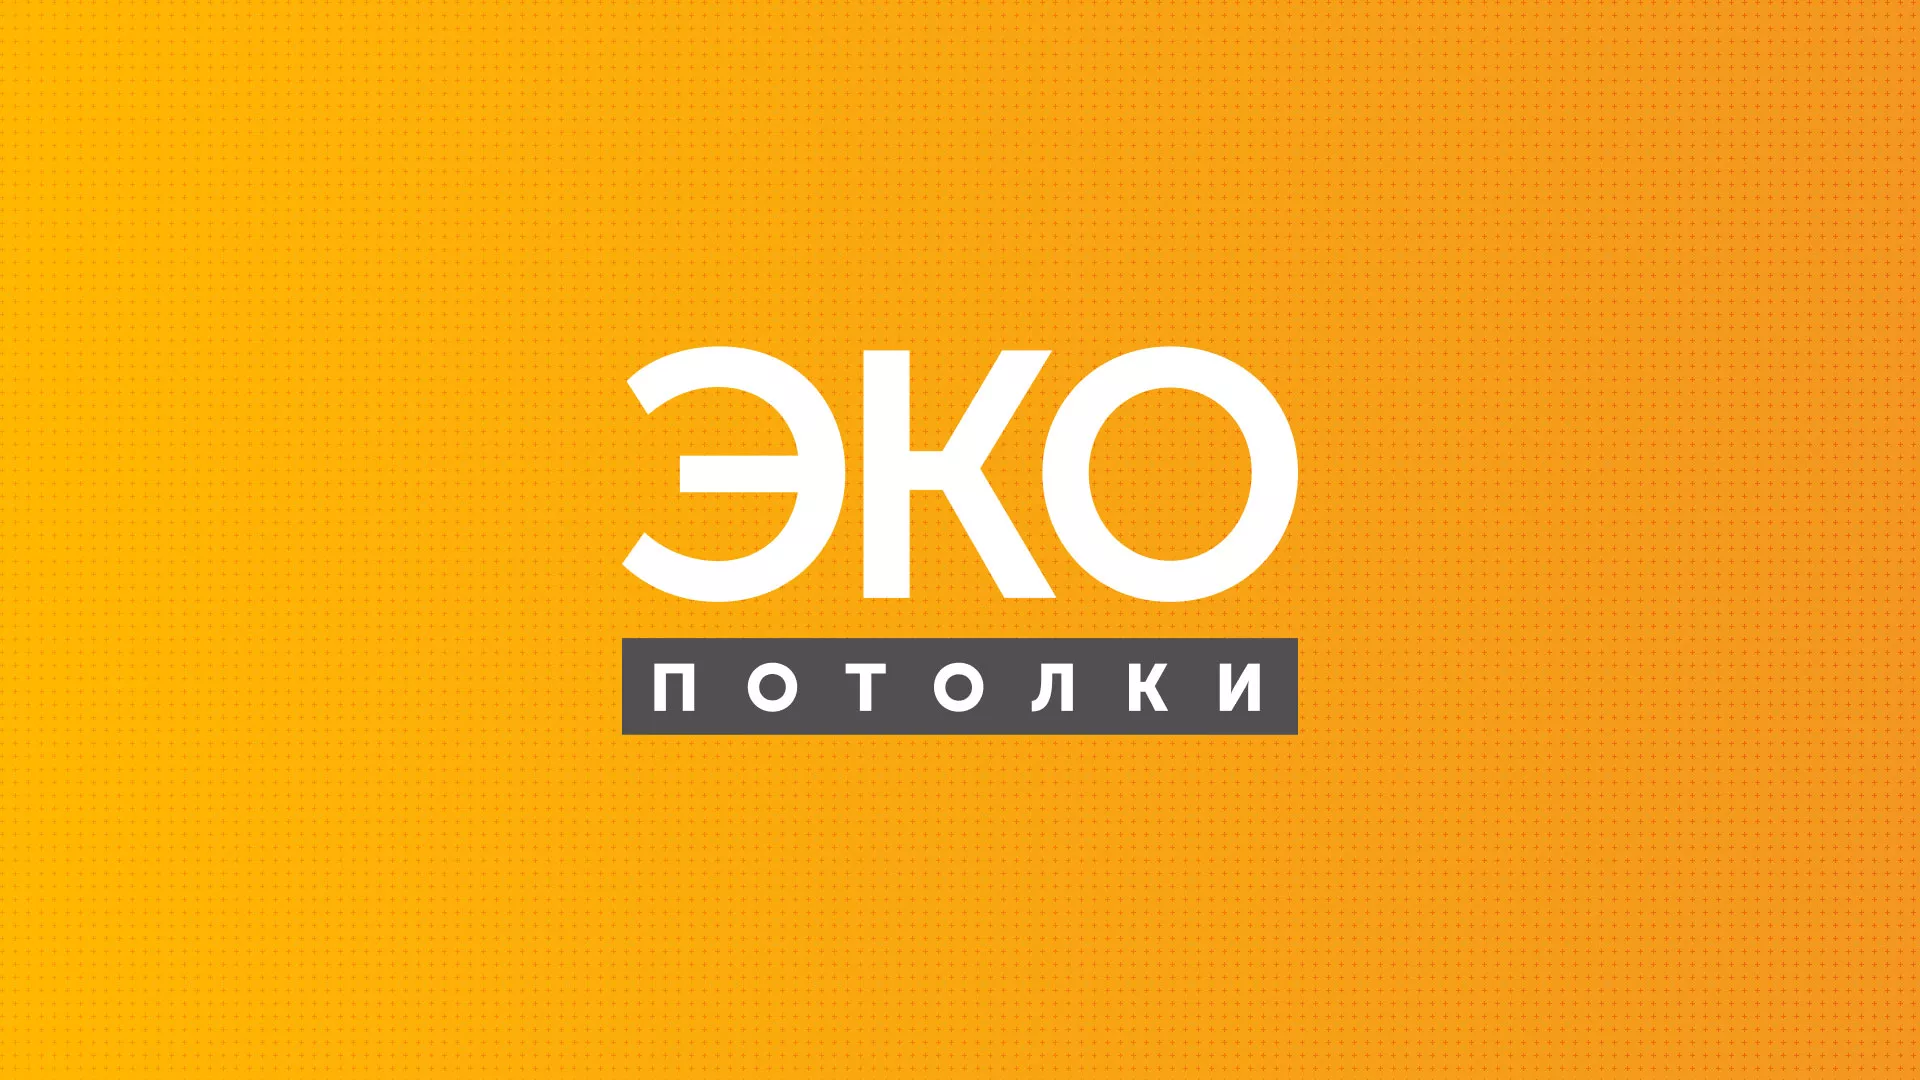 Разработка сайта по натяжным потолкам «Эко Потолки» в Костроме